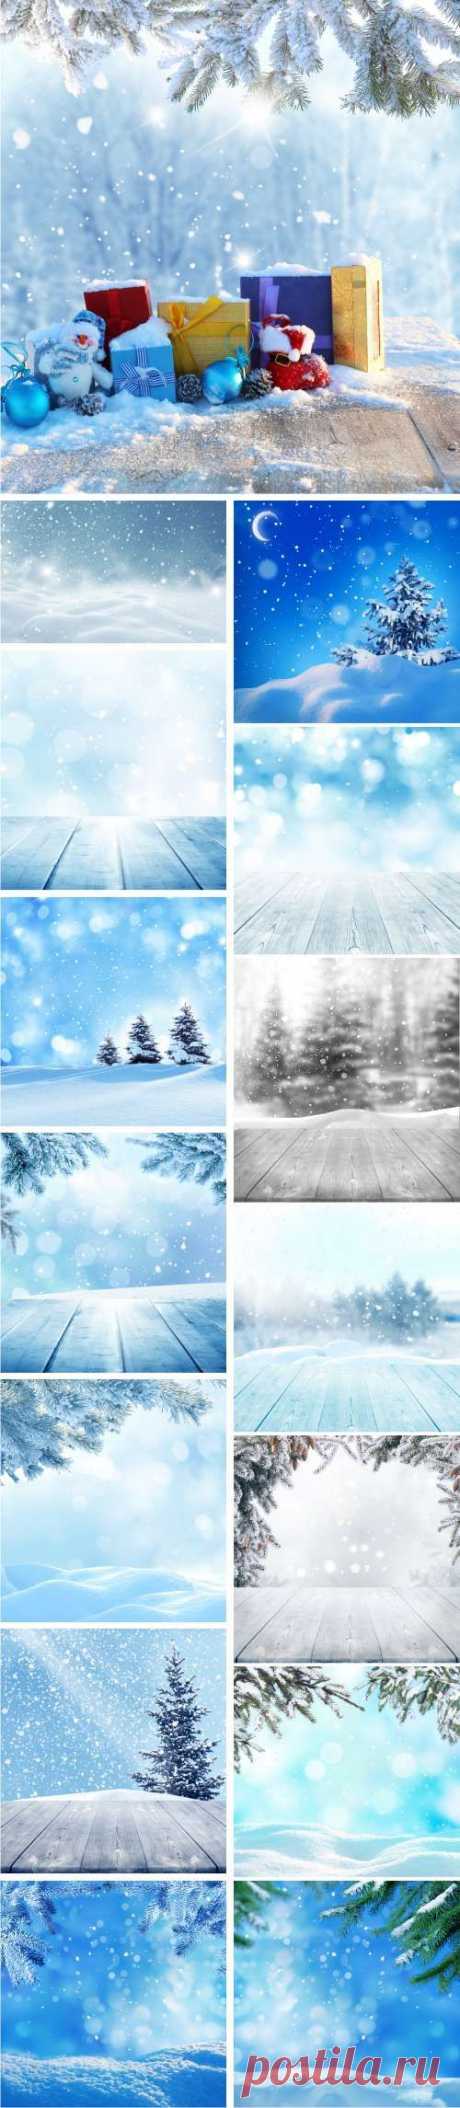 Абстрактные зимние фоны | Winter abstract background. Сhristmas landscape - 2, 29 JPEG » ALLDAY - народный сайт о дизайне